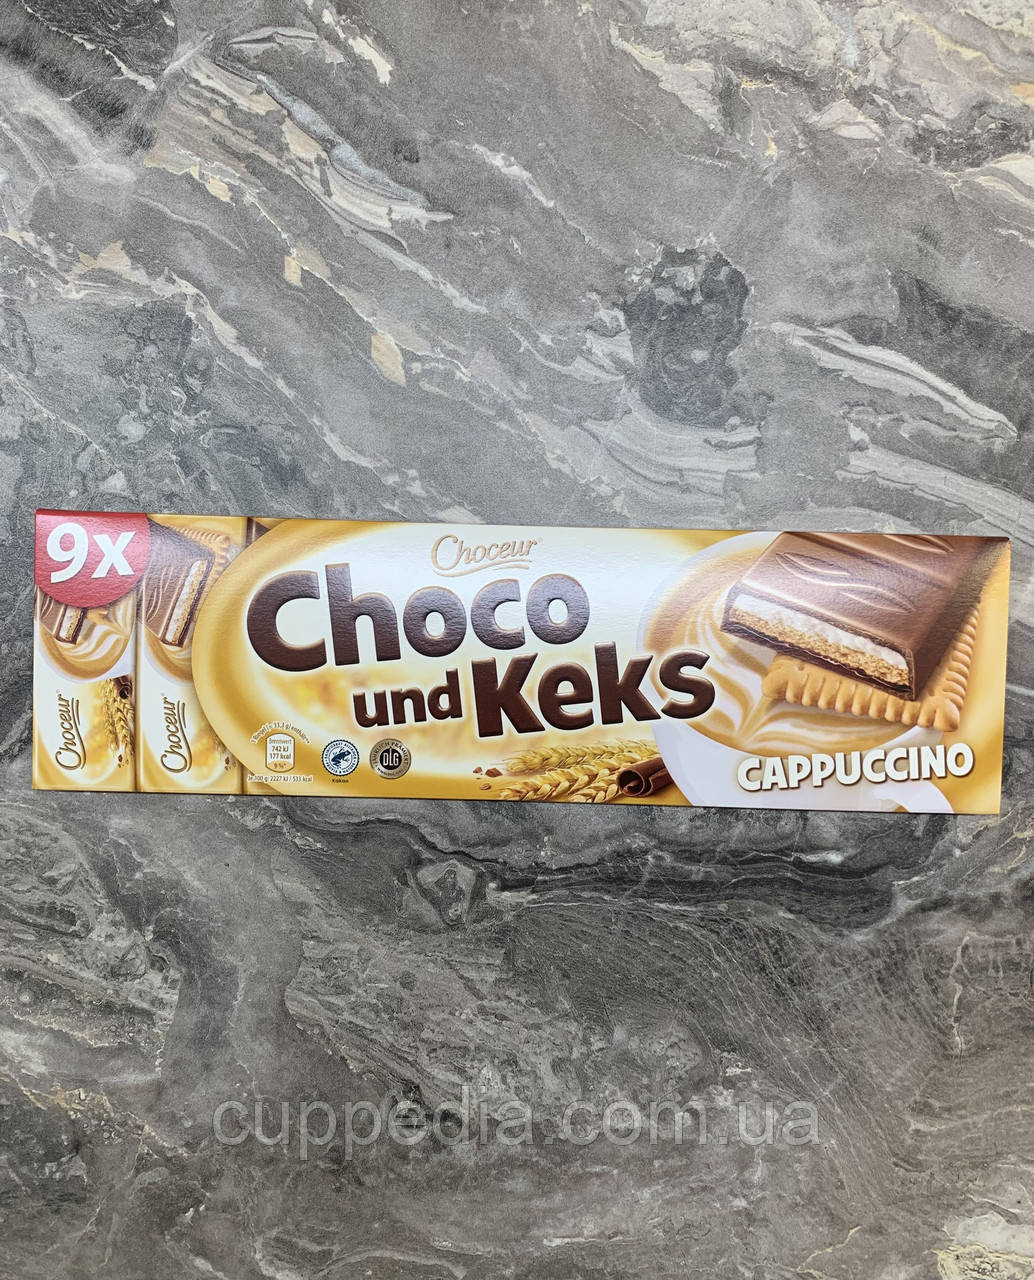 Шоколад Choceur Choco und Keks Cappuccino 300 грм